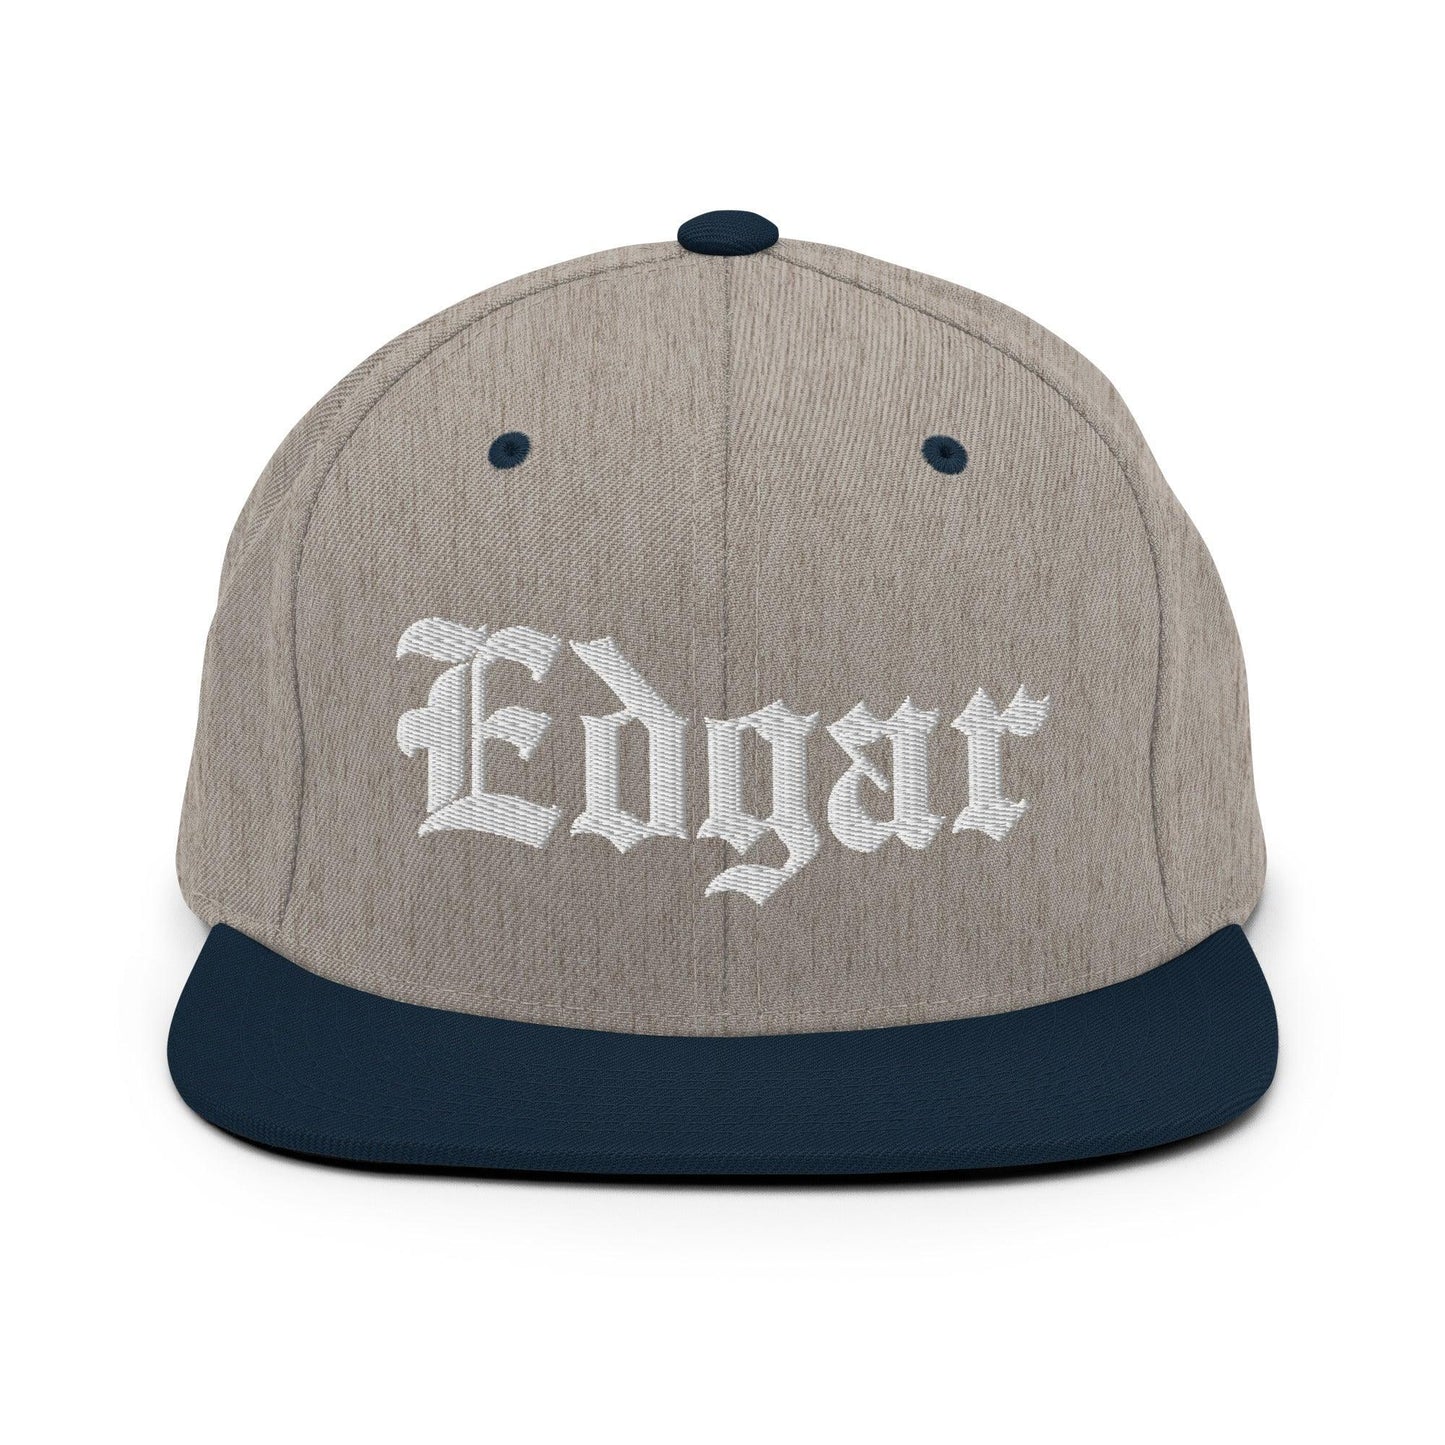 Edgar Old English Snapback Hat Heather Grey/ Navy